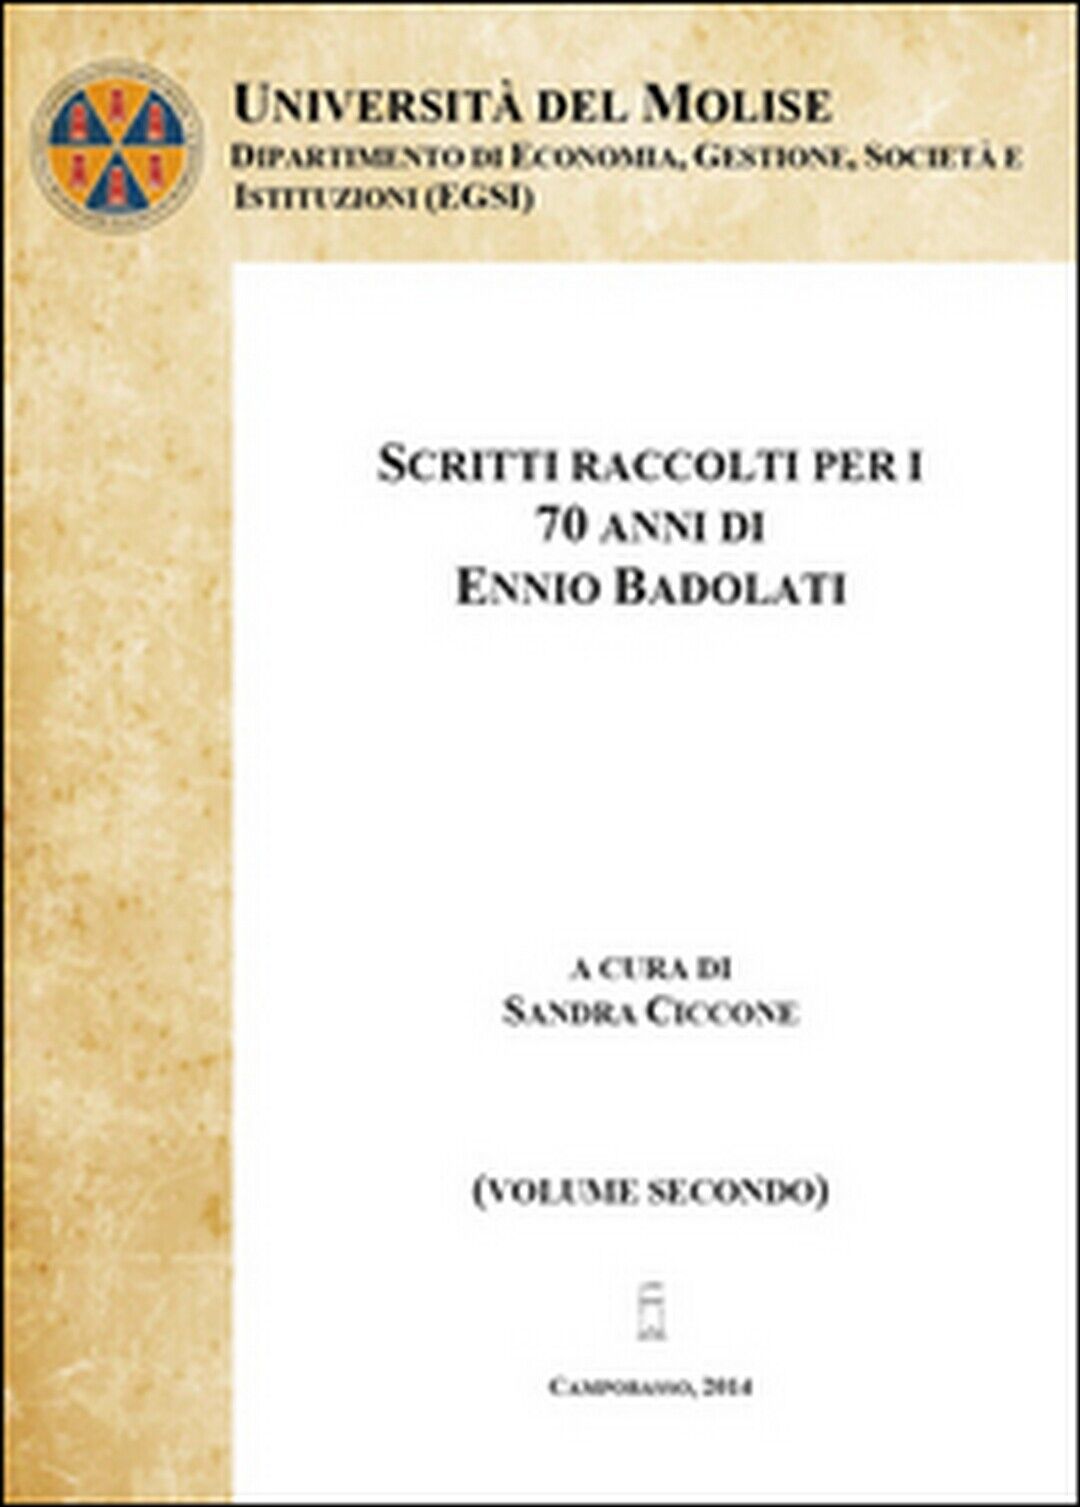 Scritti raccolti per i 70 anni, di Ennio Badolati Vol.2, Sandra Ciccone,  2014